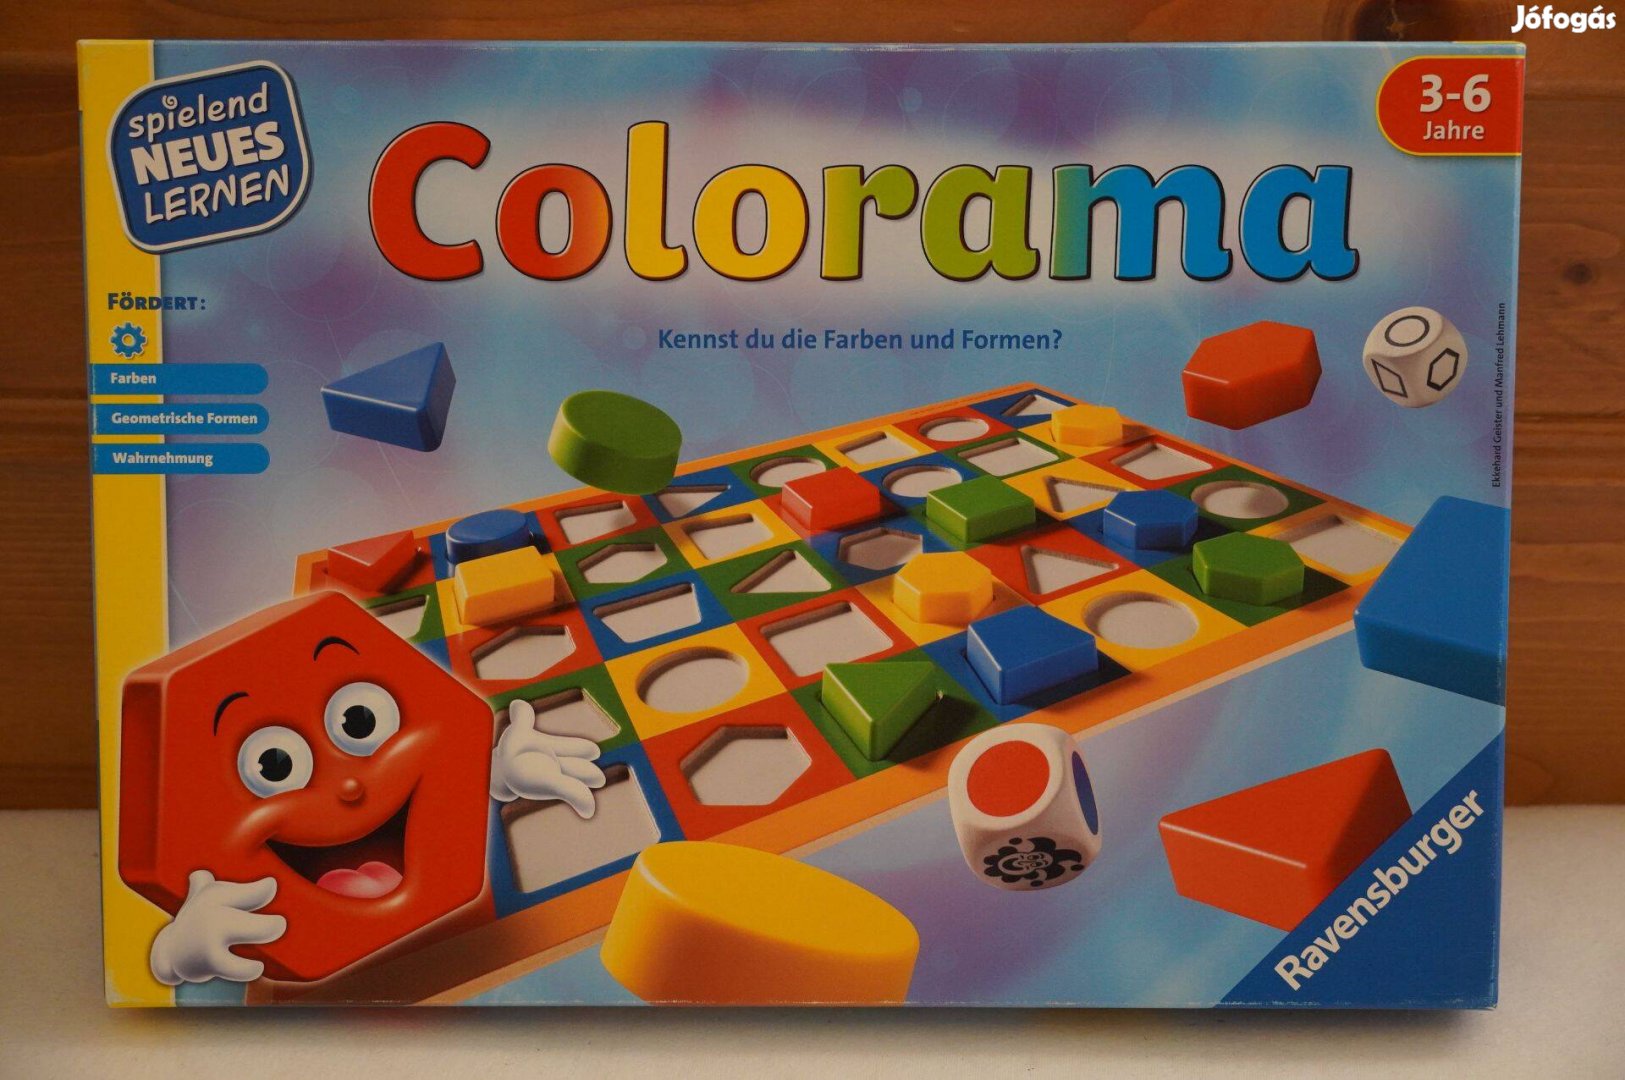 Colorama fejlesztő társasjáték hiánytalan - Ravensburger - használt